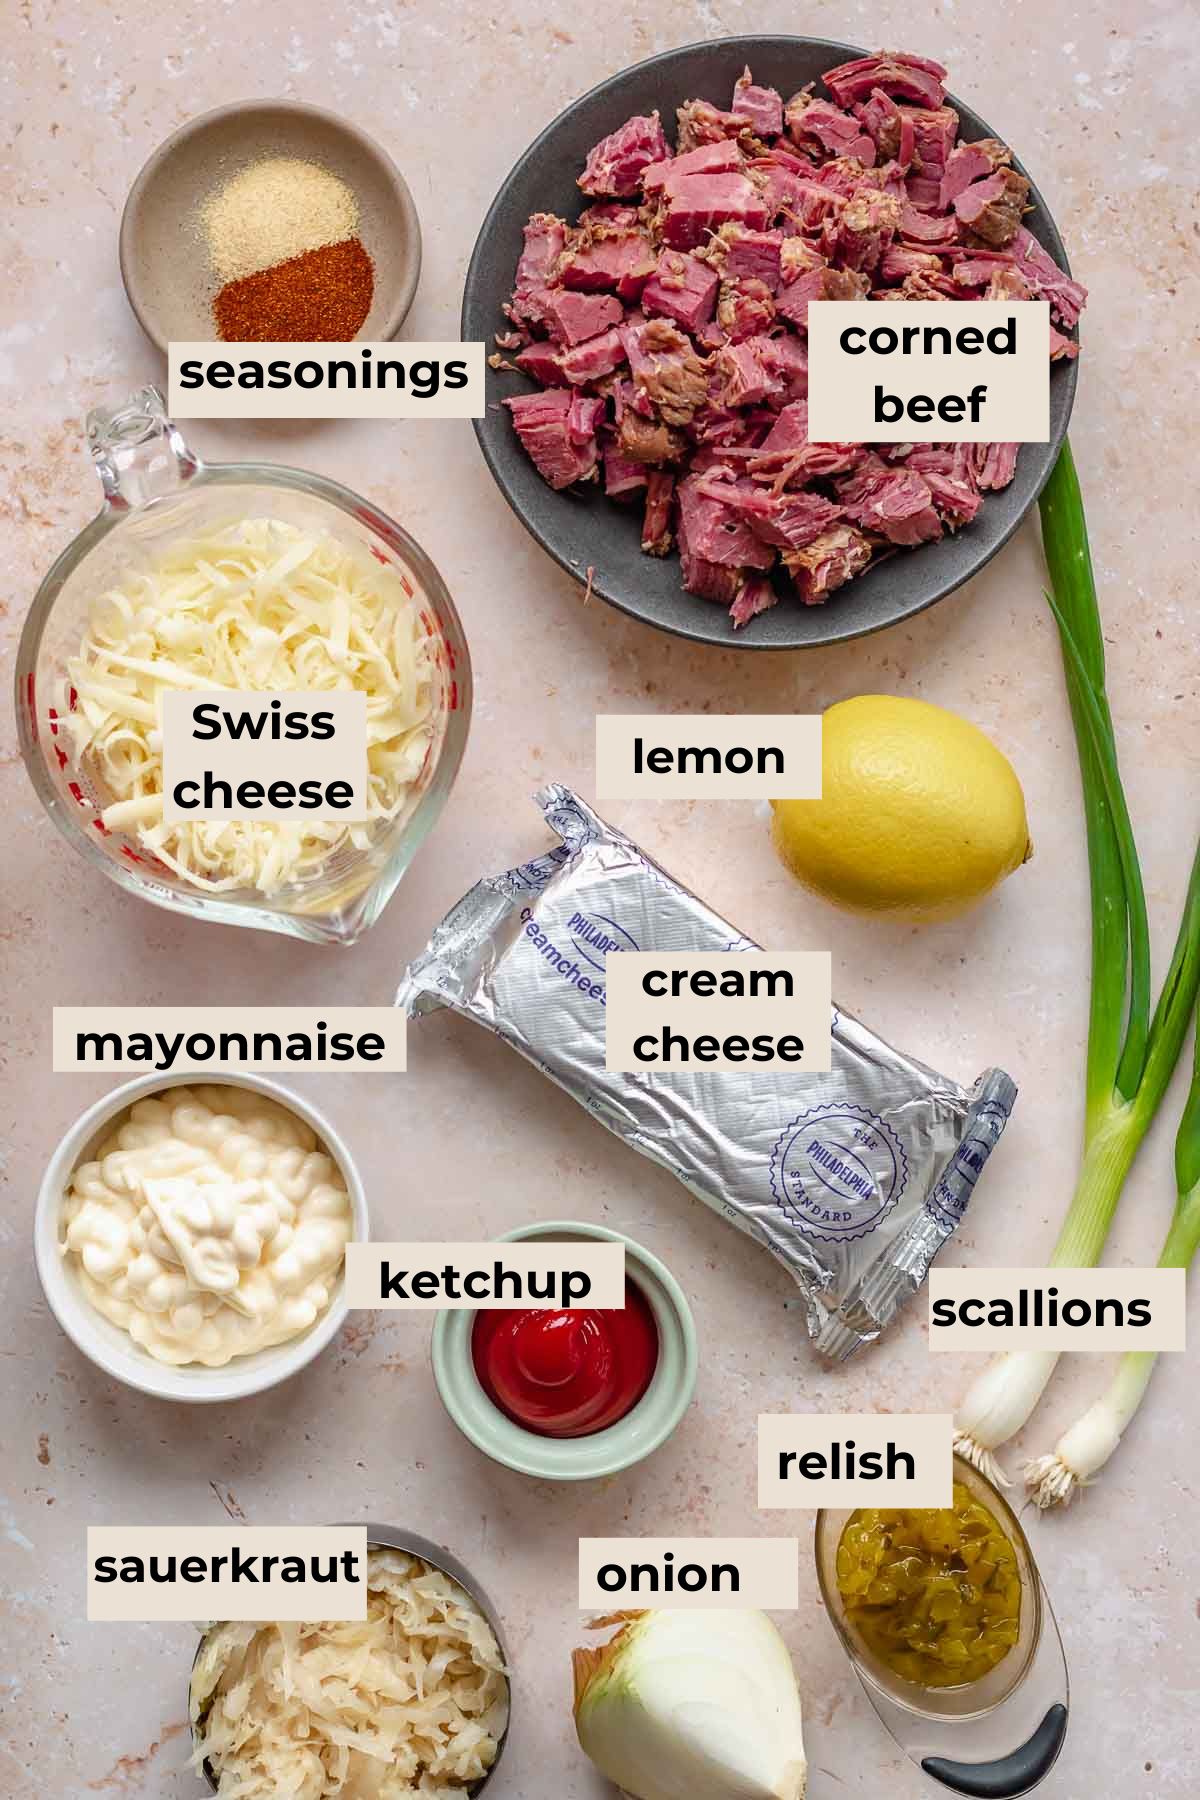 Ingredients for corned beef reuben dip.